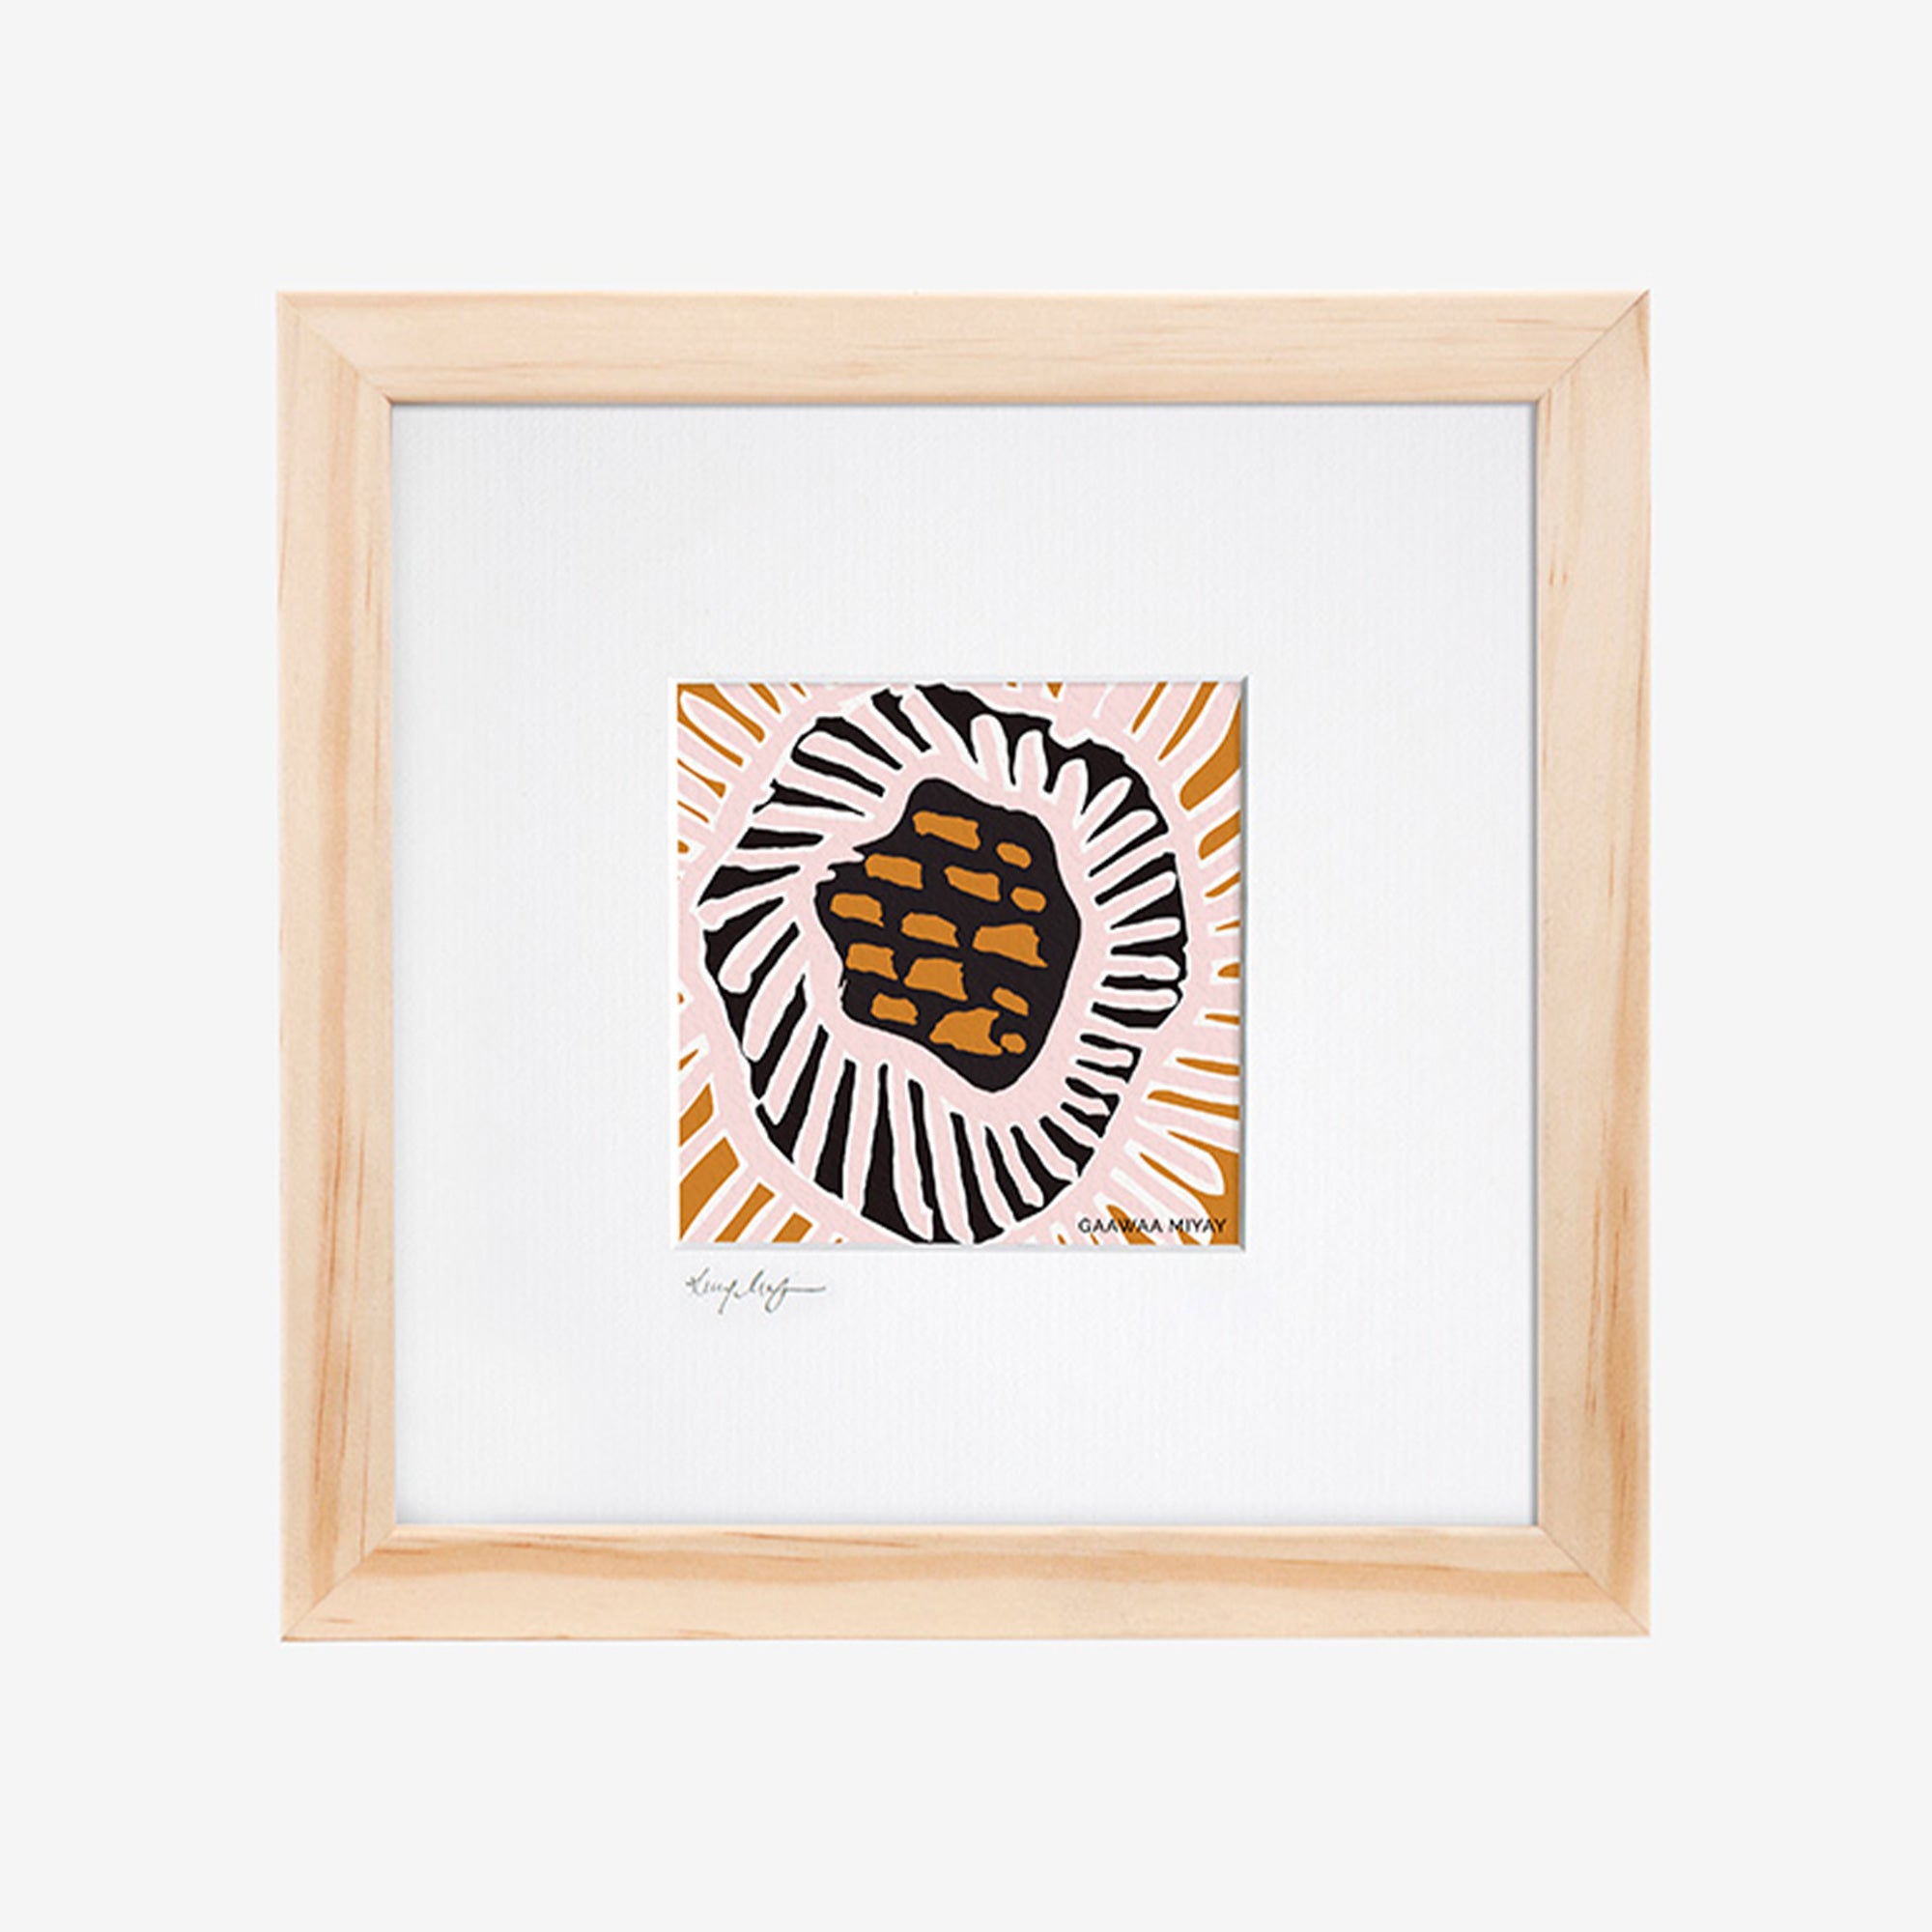 Framed Print - Yarraggaa Mayrah (Yellow Dots)